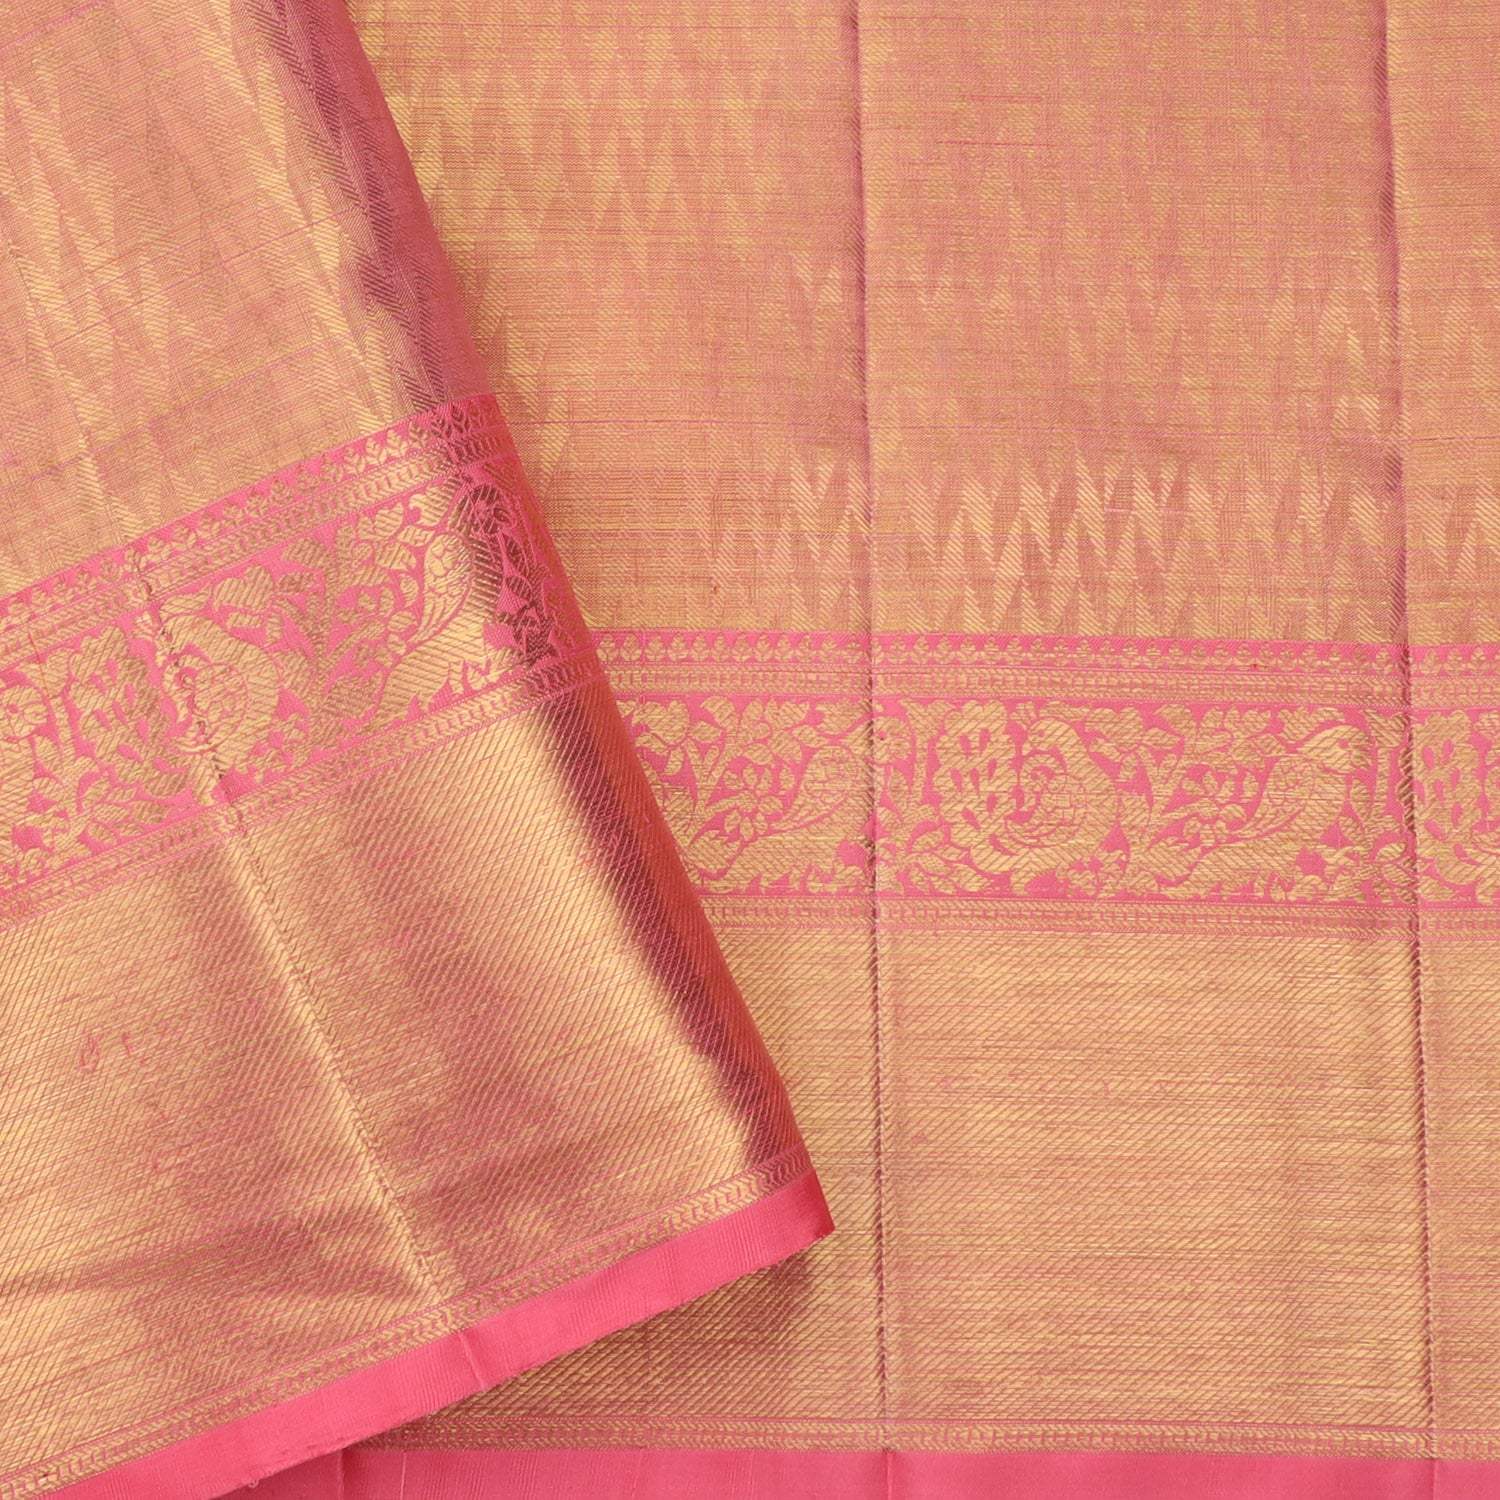 Kanakavalli Kanjivaram Silk Sari 586-01-67756 - Cover View | Silk saree  blouse designs patterns, Saree tassels designs, Silk sarees with price